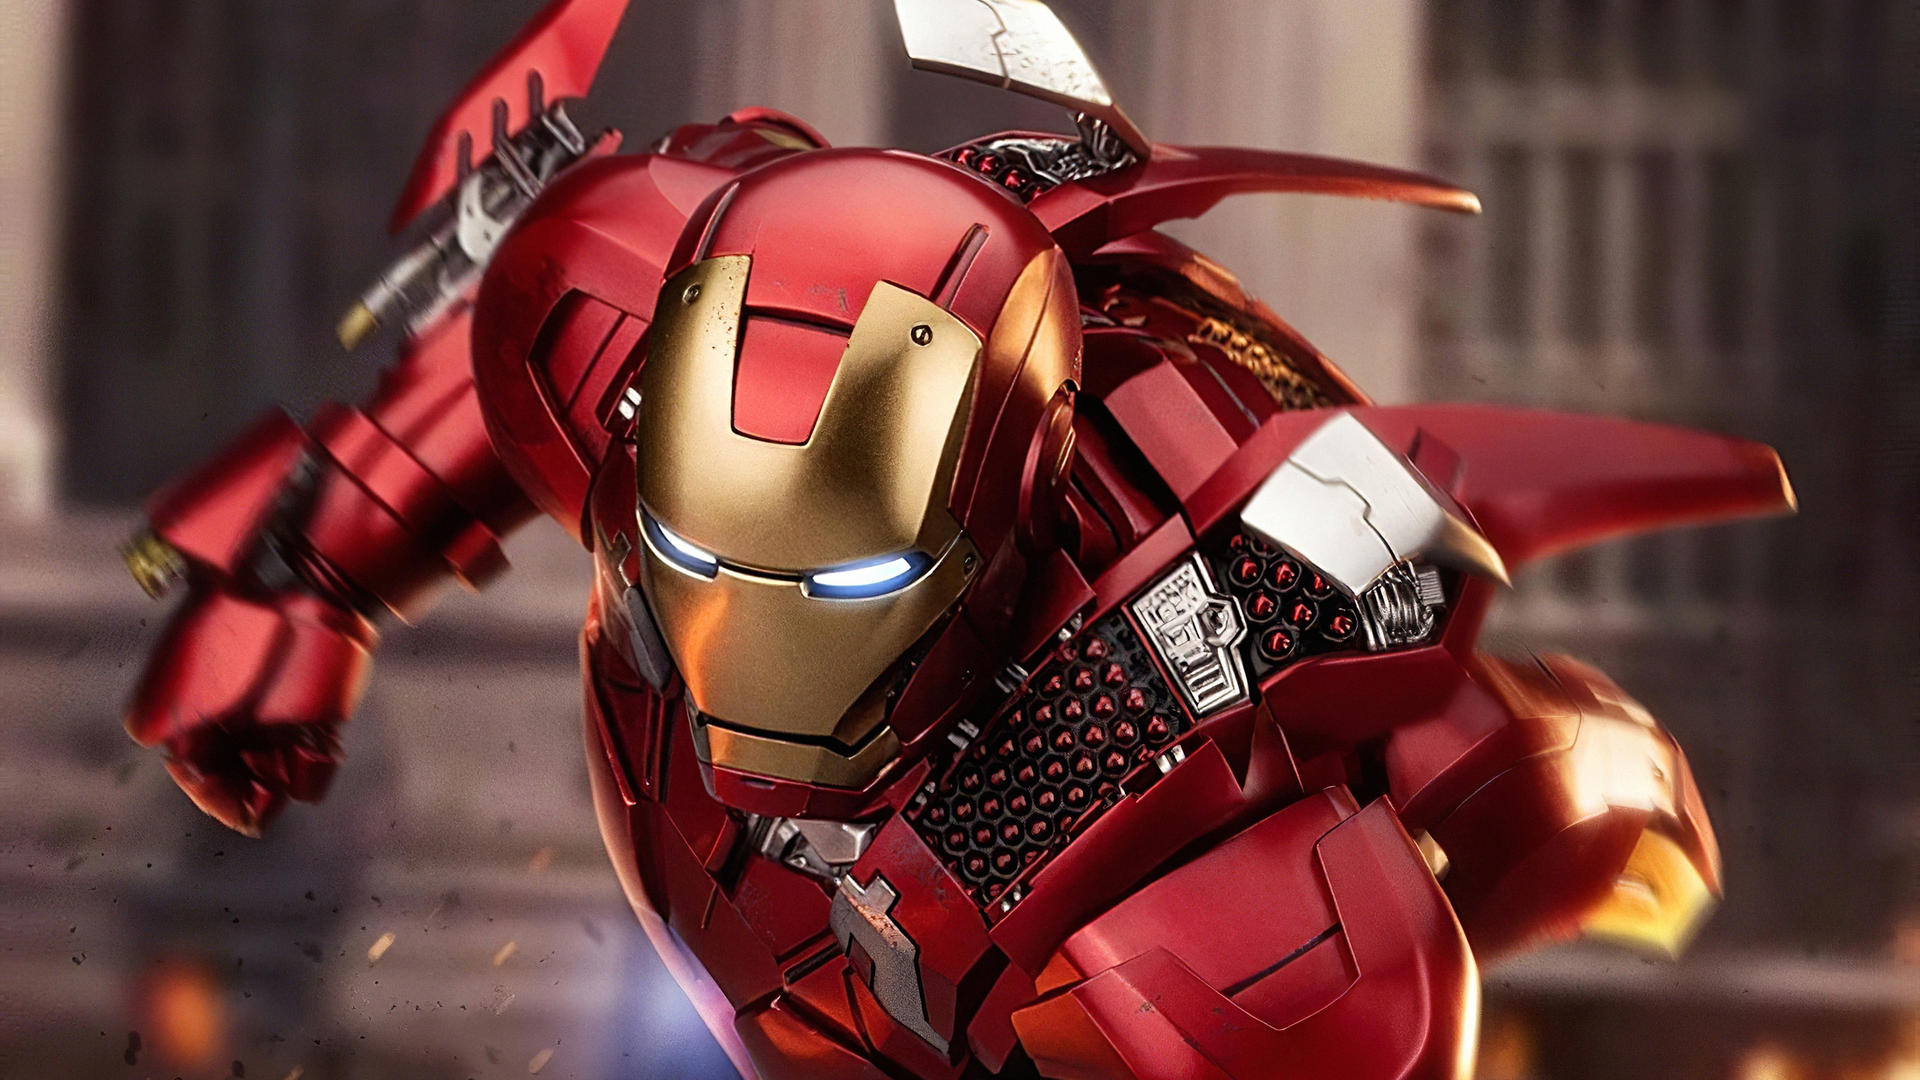 Tận hưởng trải nghiệm chưa từng có với Iron Man 4k đầy sắc nét! Bạn muốn thấy chi tiết đến từng chi tiết của vũ khí và giáp này? Hãy xem ngay bức ảnh liên quan đến từ khóa Sắt!